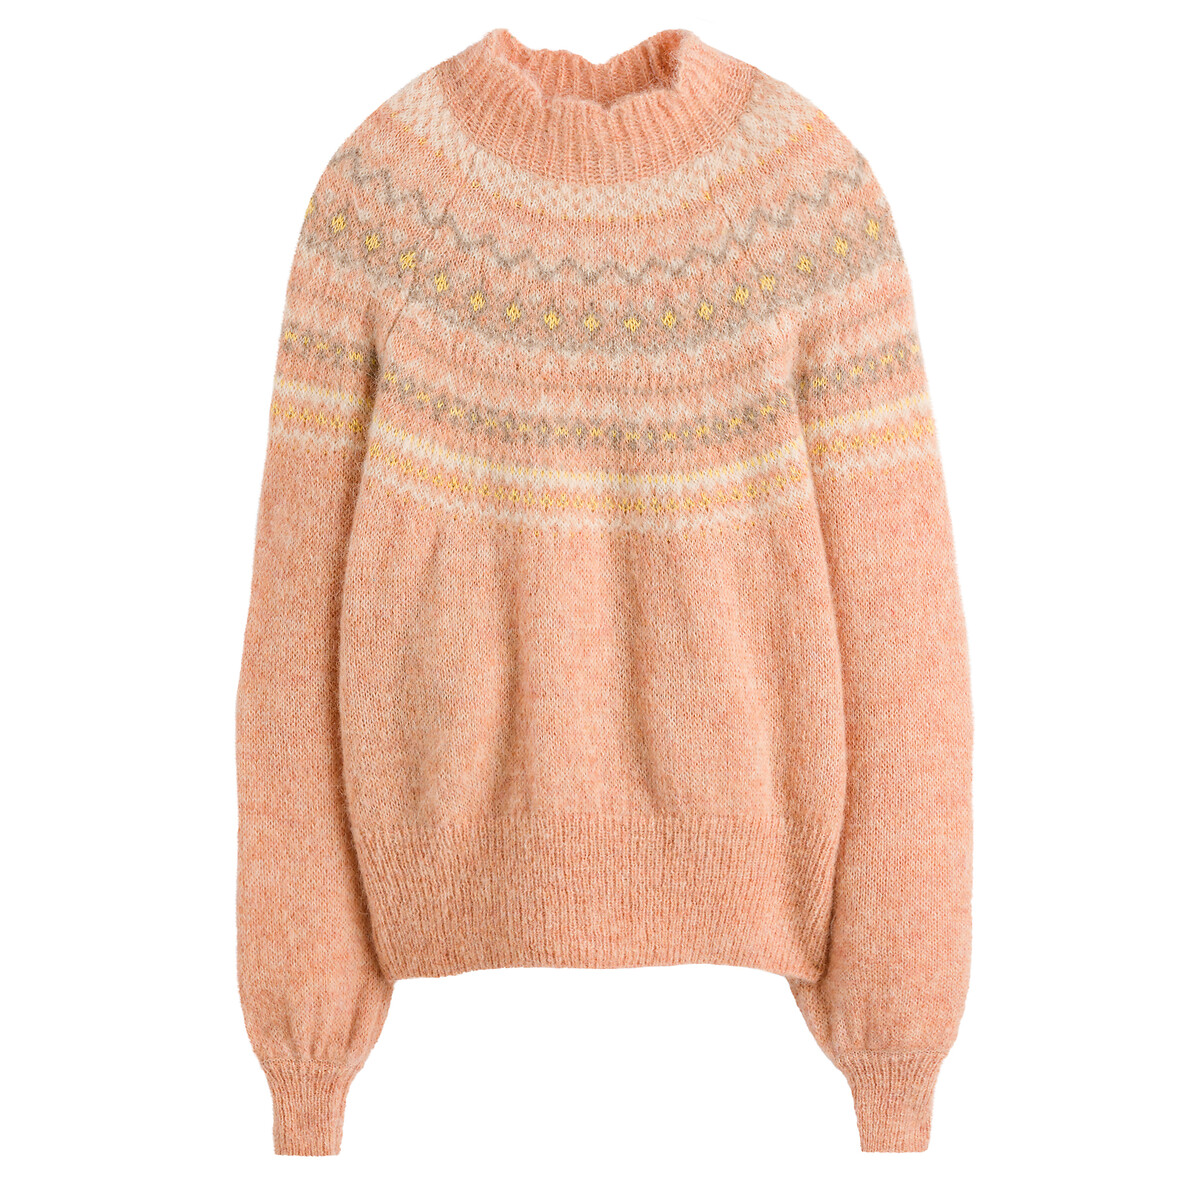 Пуловер С воротником-стойкой с жаккардовым узором L разноцветный LaRedoute, размер L - фото 5